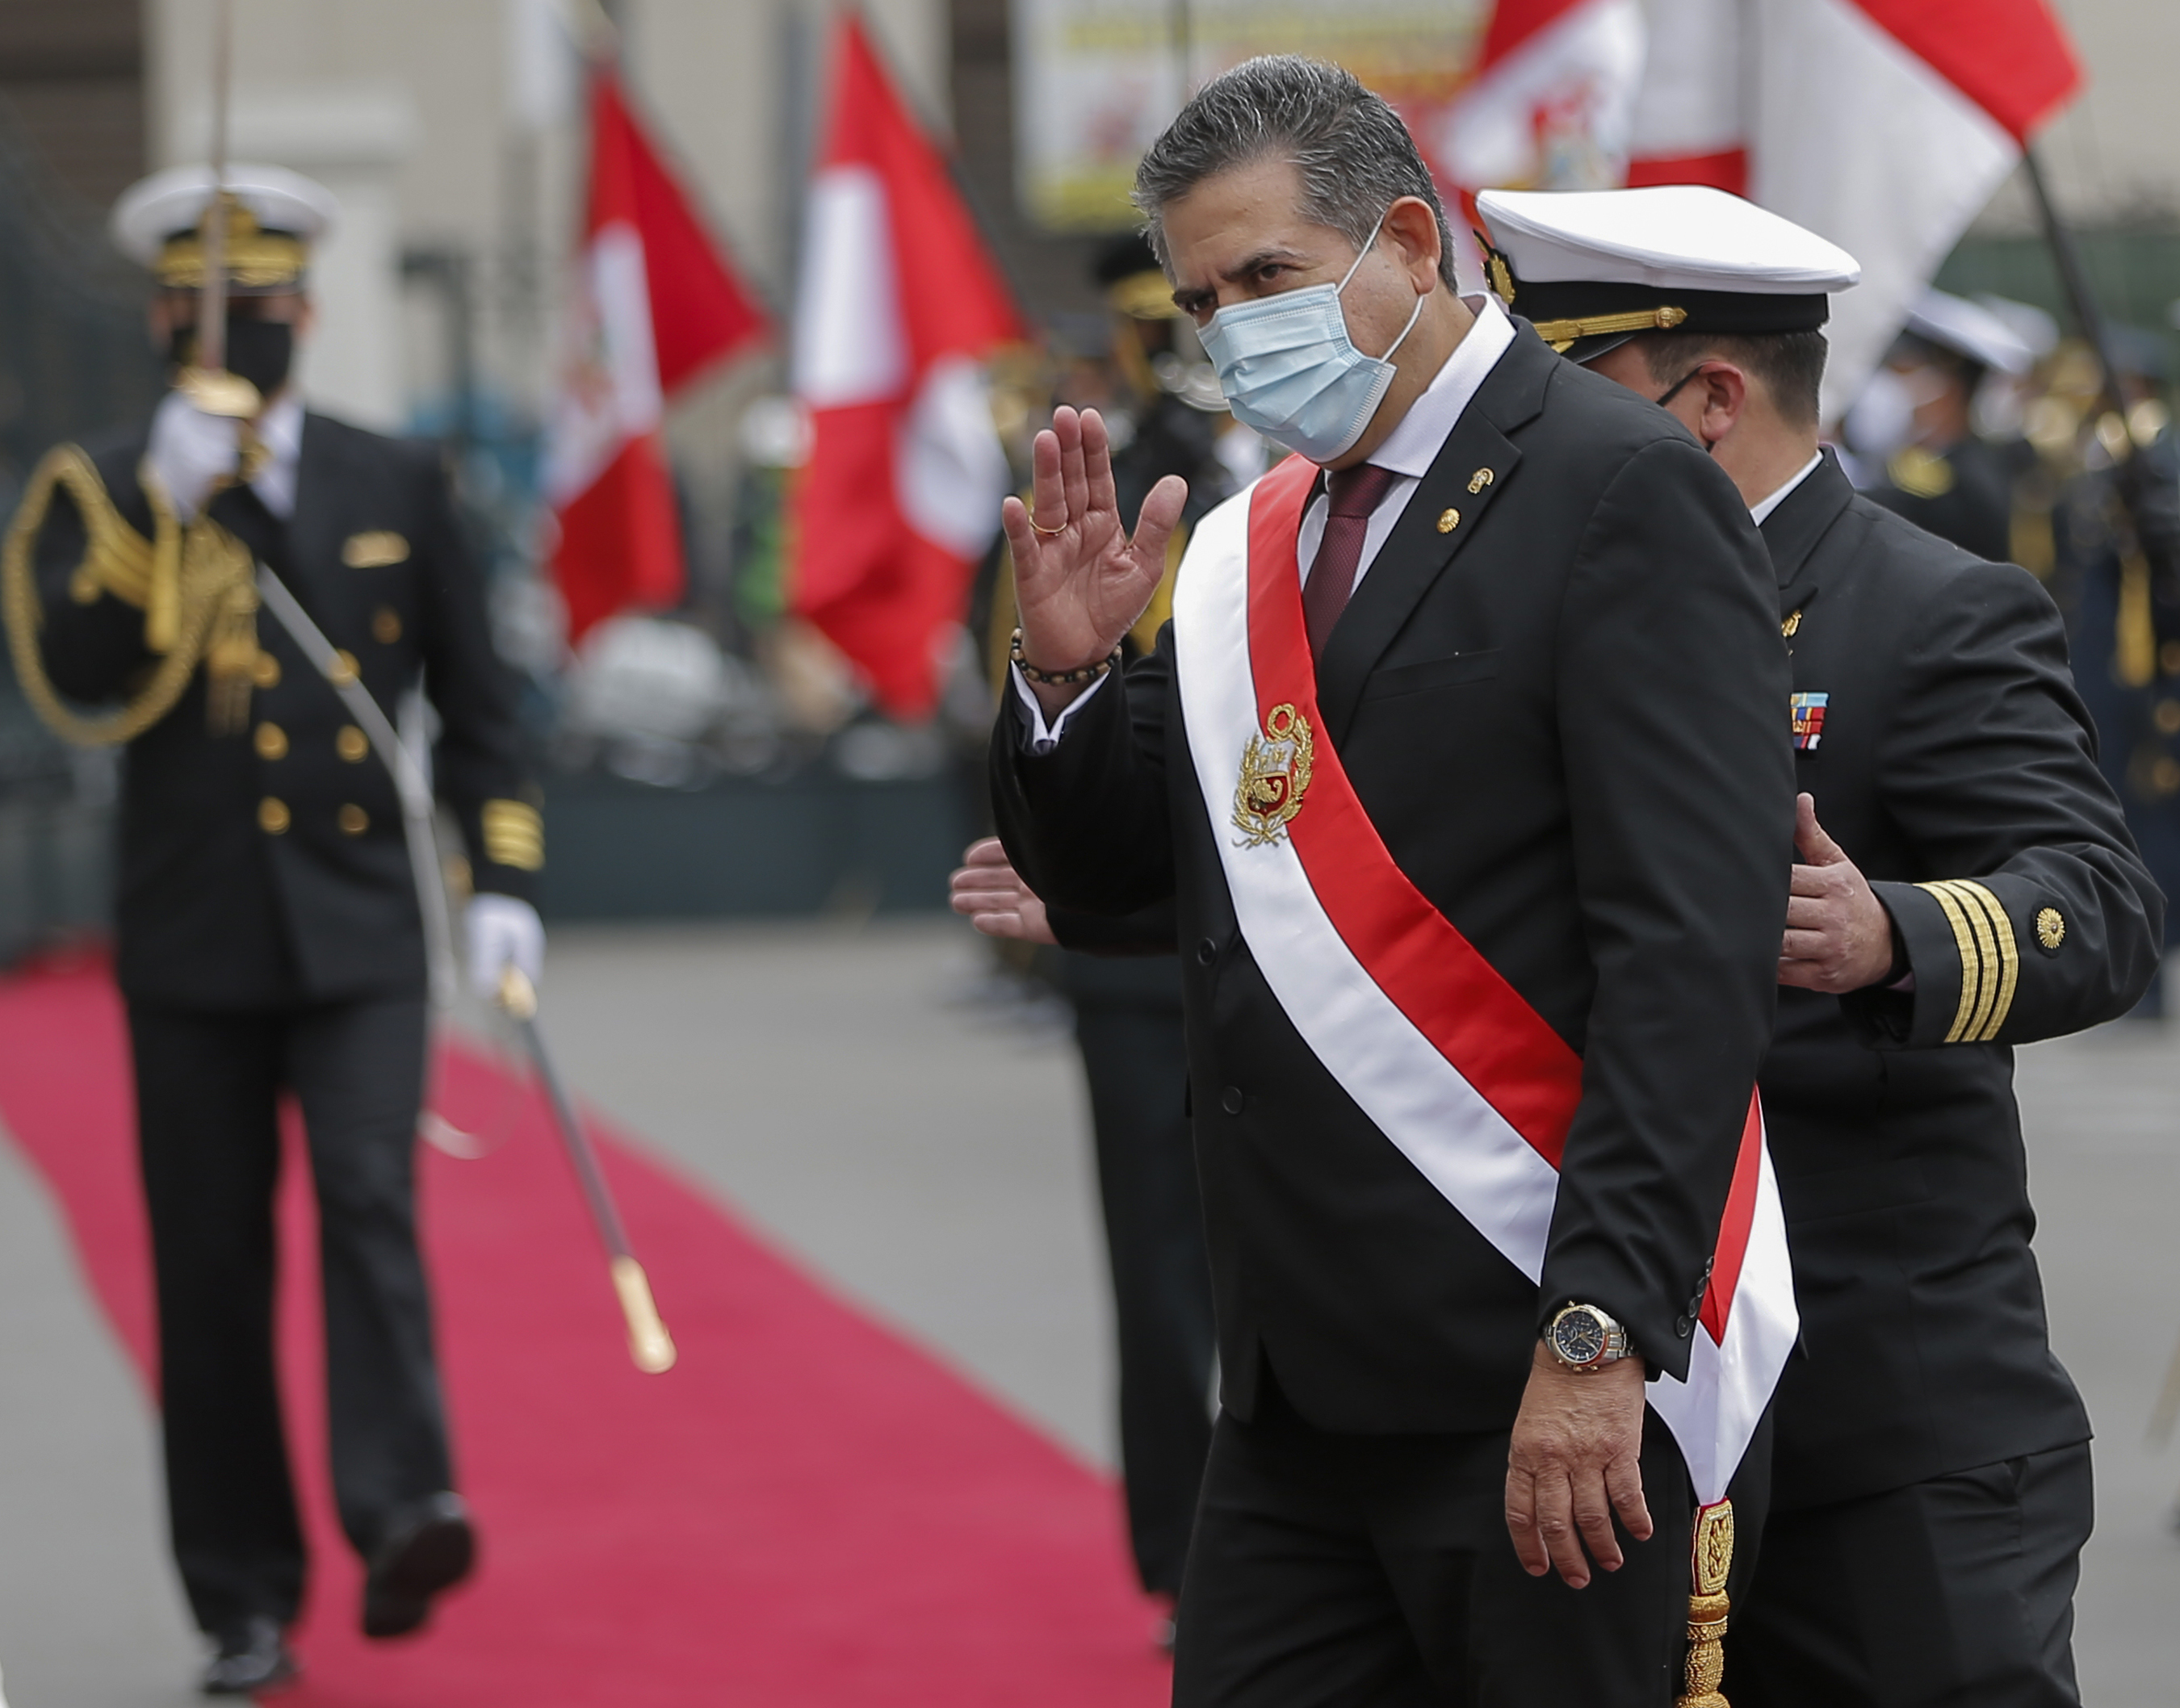 El jefe parlamentario Manuel Merino asume como presidente de Perú